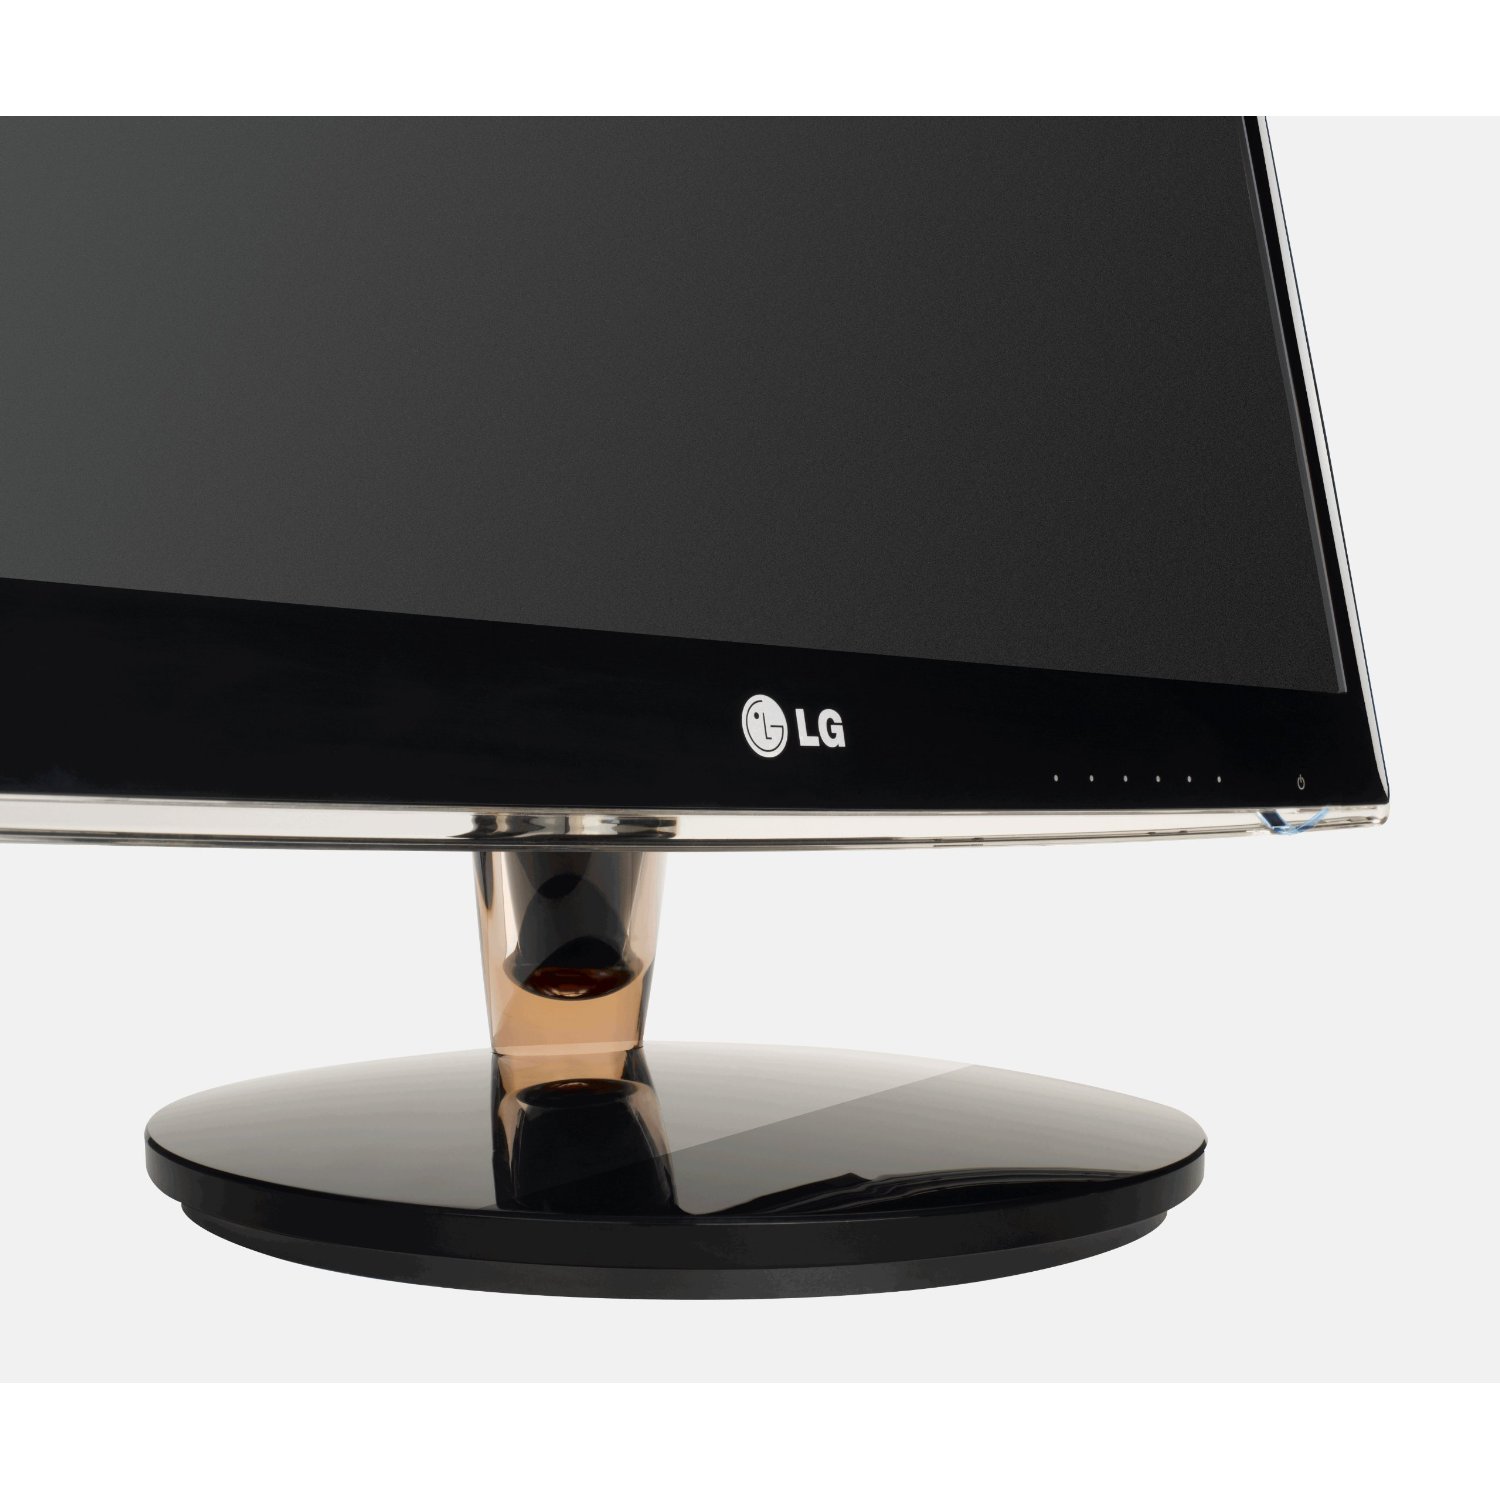 LG IPS226V-PN LED Backlight LCD Full HD S-IPS Monitor ...